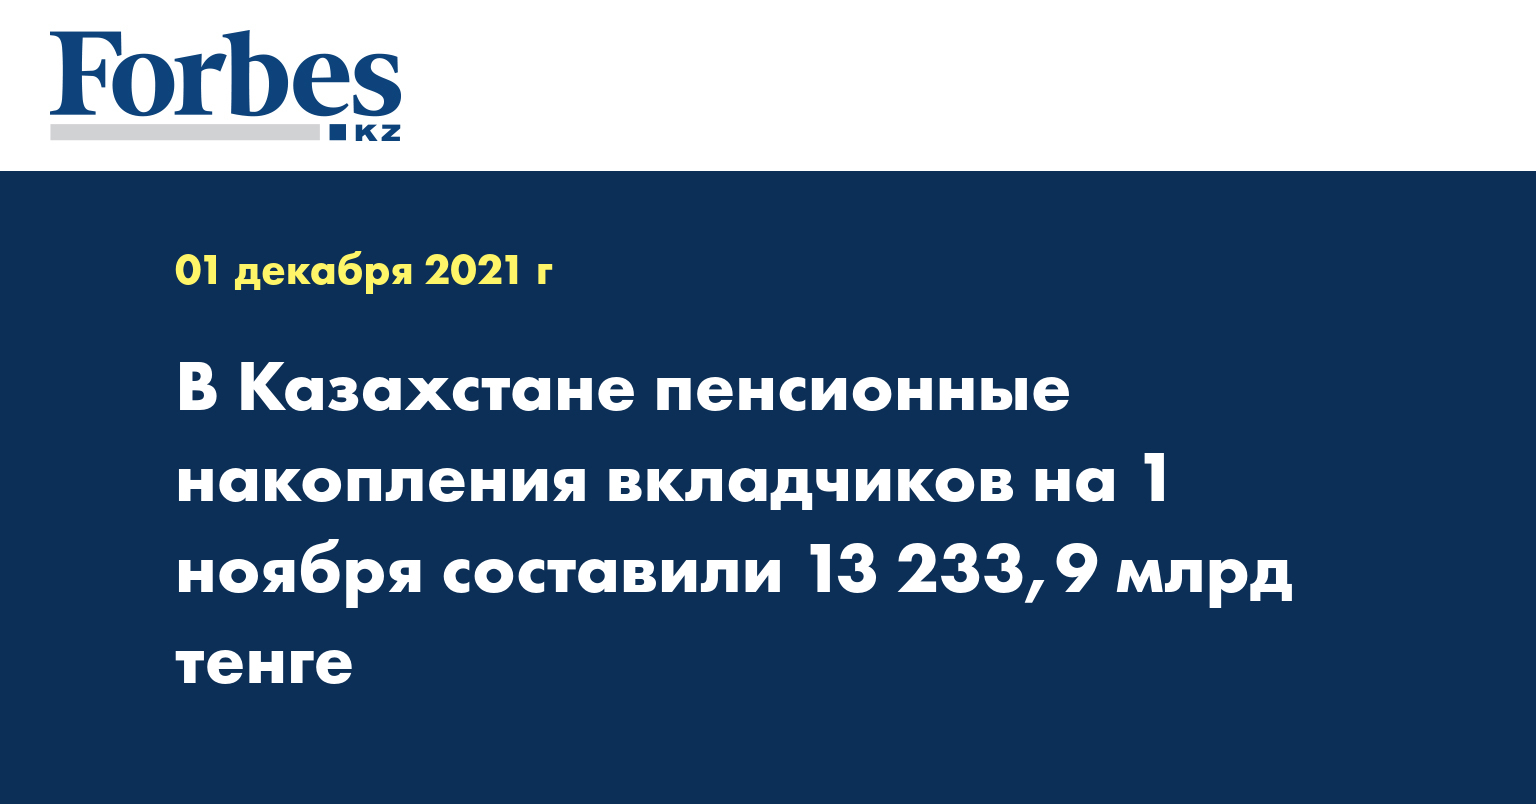 В Казахстане пенсионные накопления вкладчиков на 1 ноября составили 13 233,9 млрд тенге